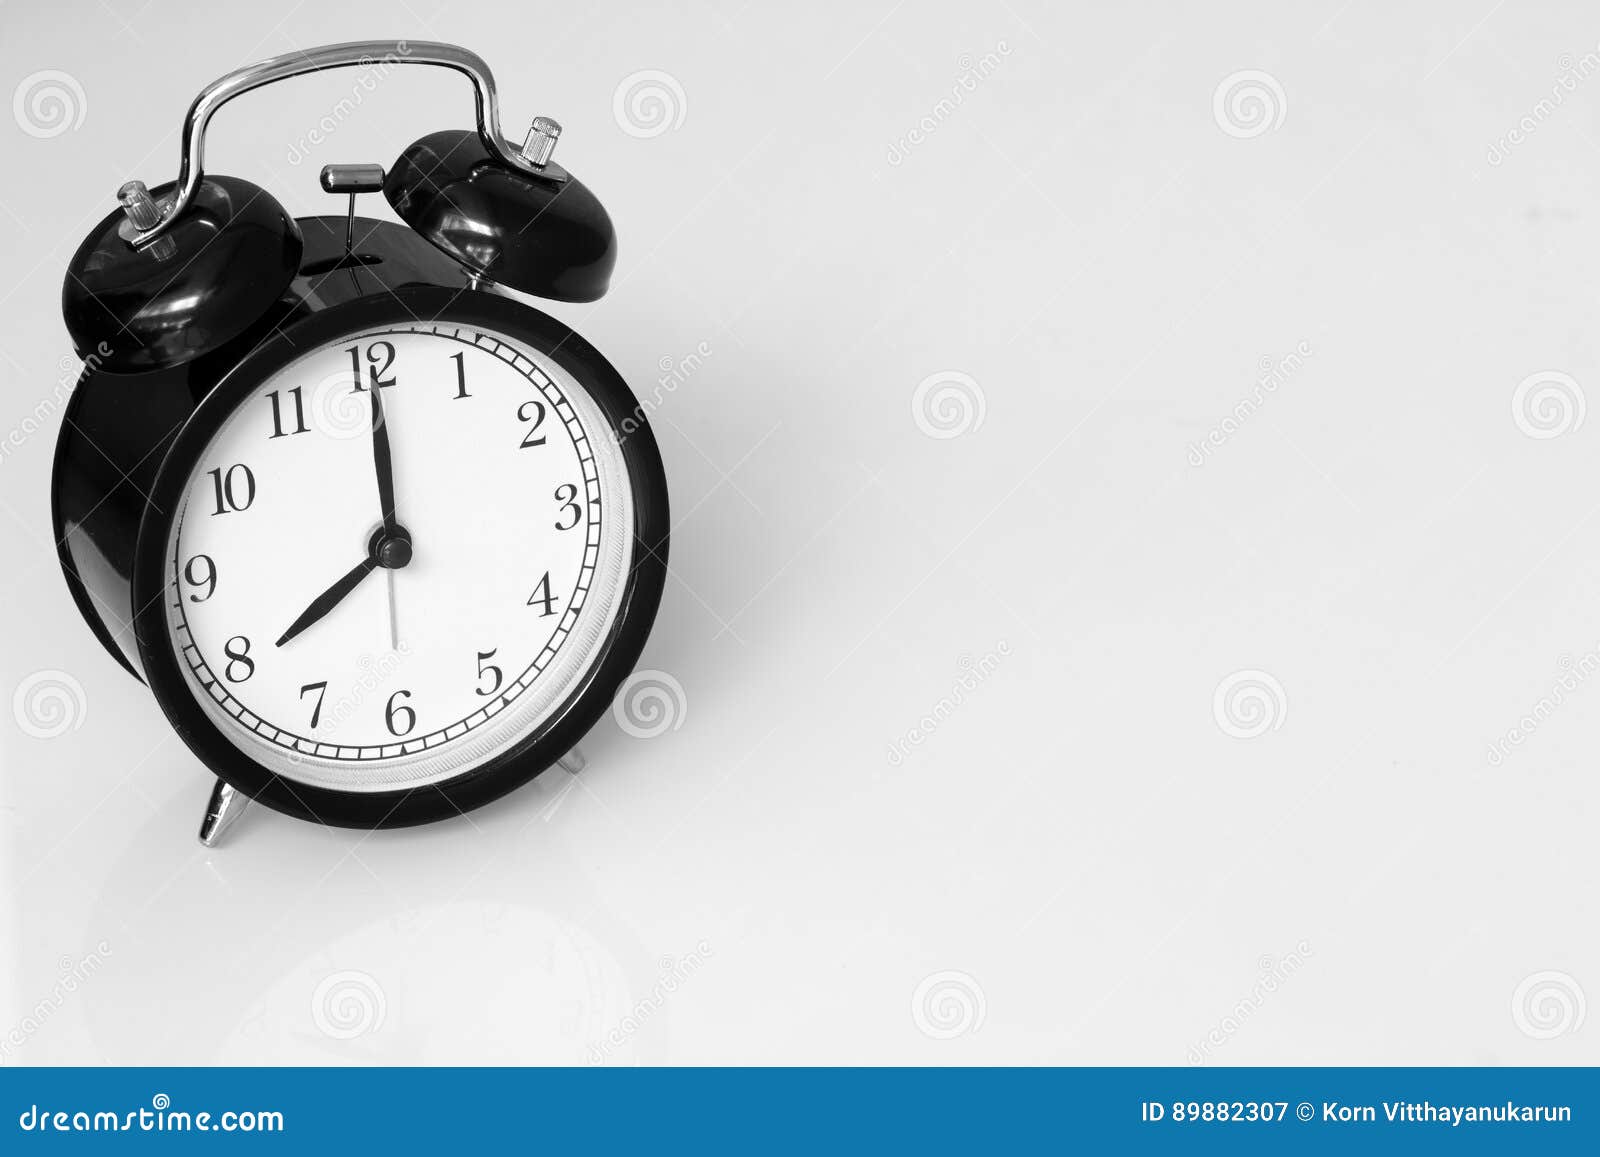 Ρολόι αναδρομικό στο ρολόι 8 ο ` στο άσπρο επιτραπέζιο υπόβαθρο με το διάστημα για το κείμενο